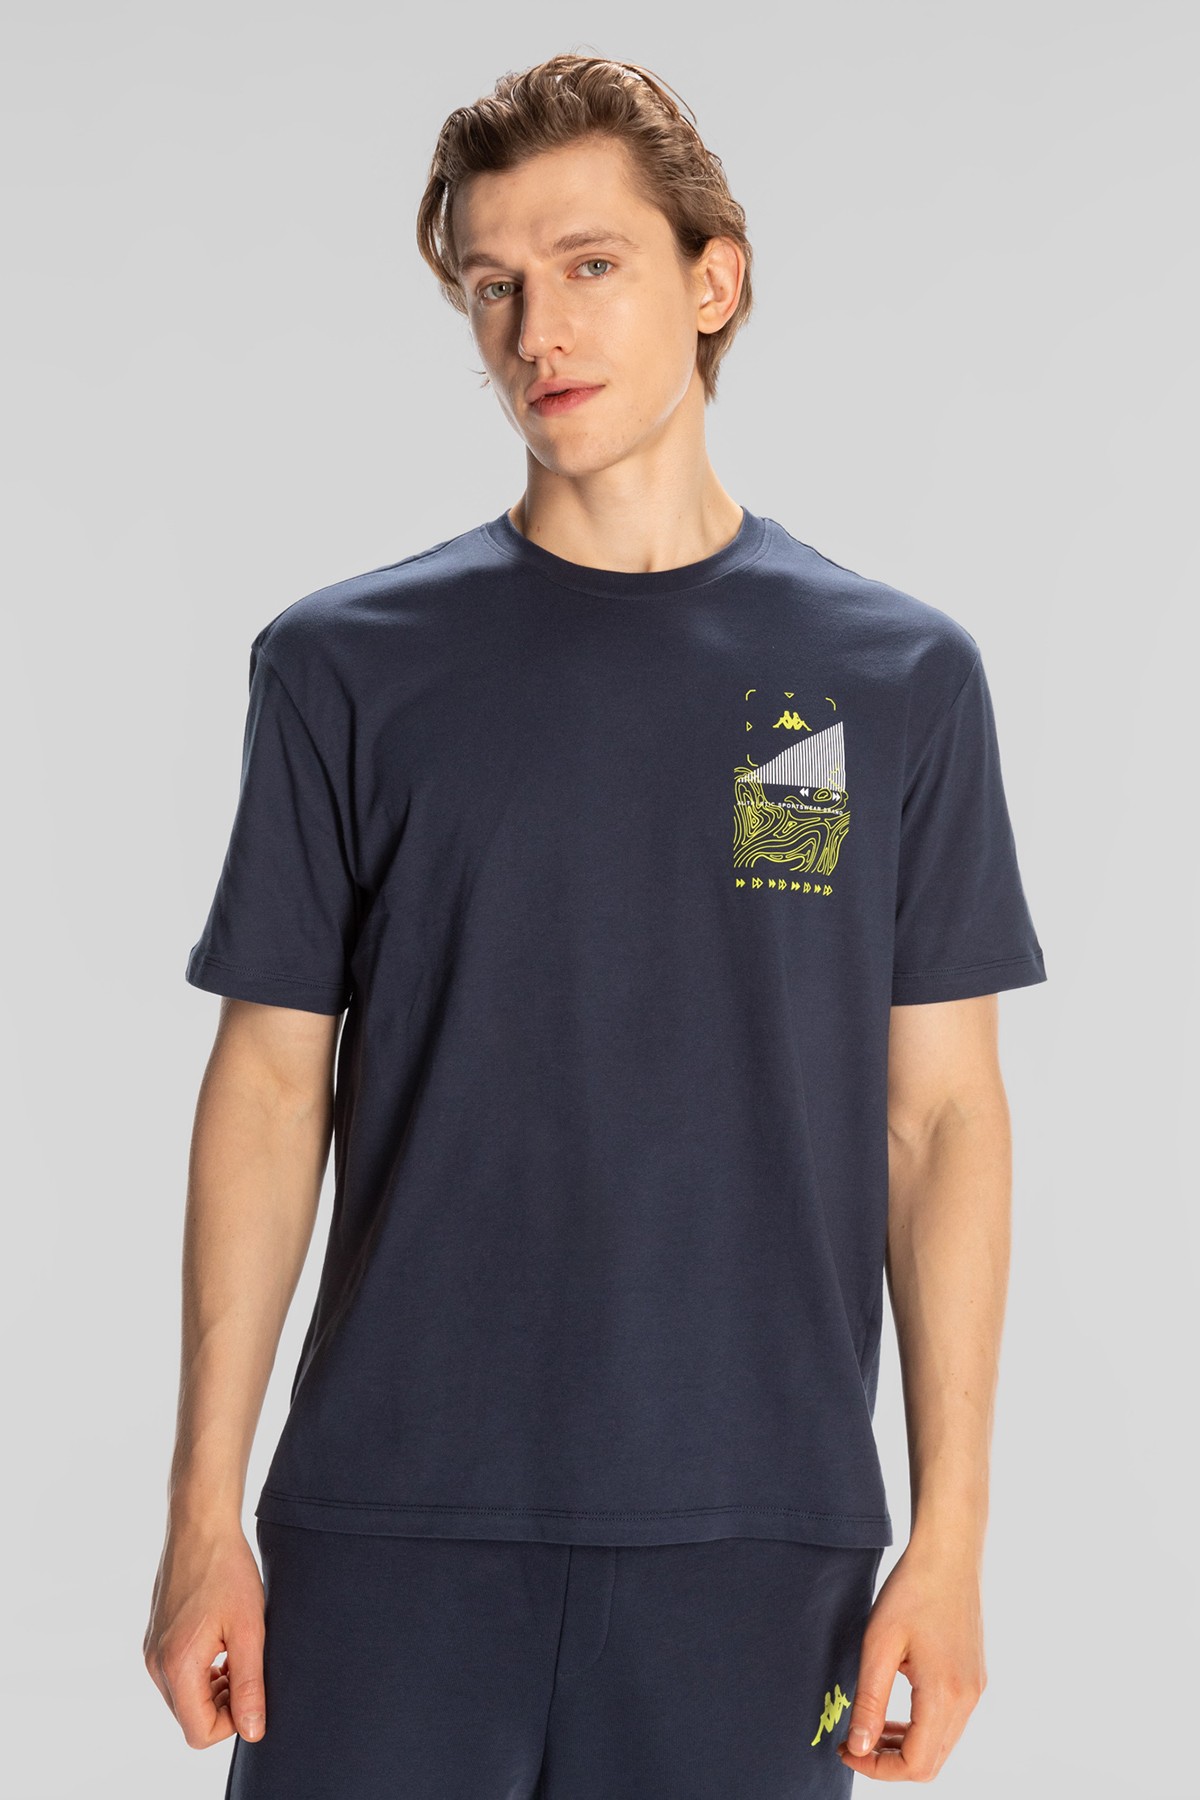 Kappa Authentic Spacetime Erkek T-Shirt 371S8IW